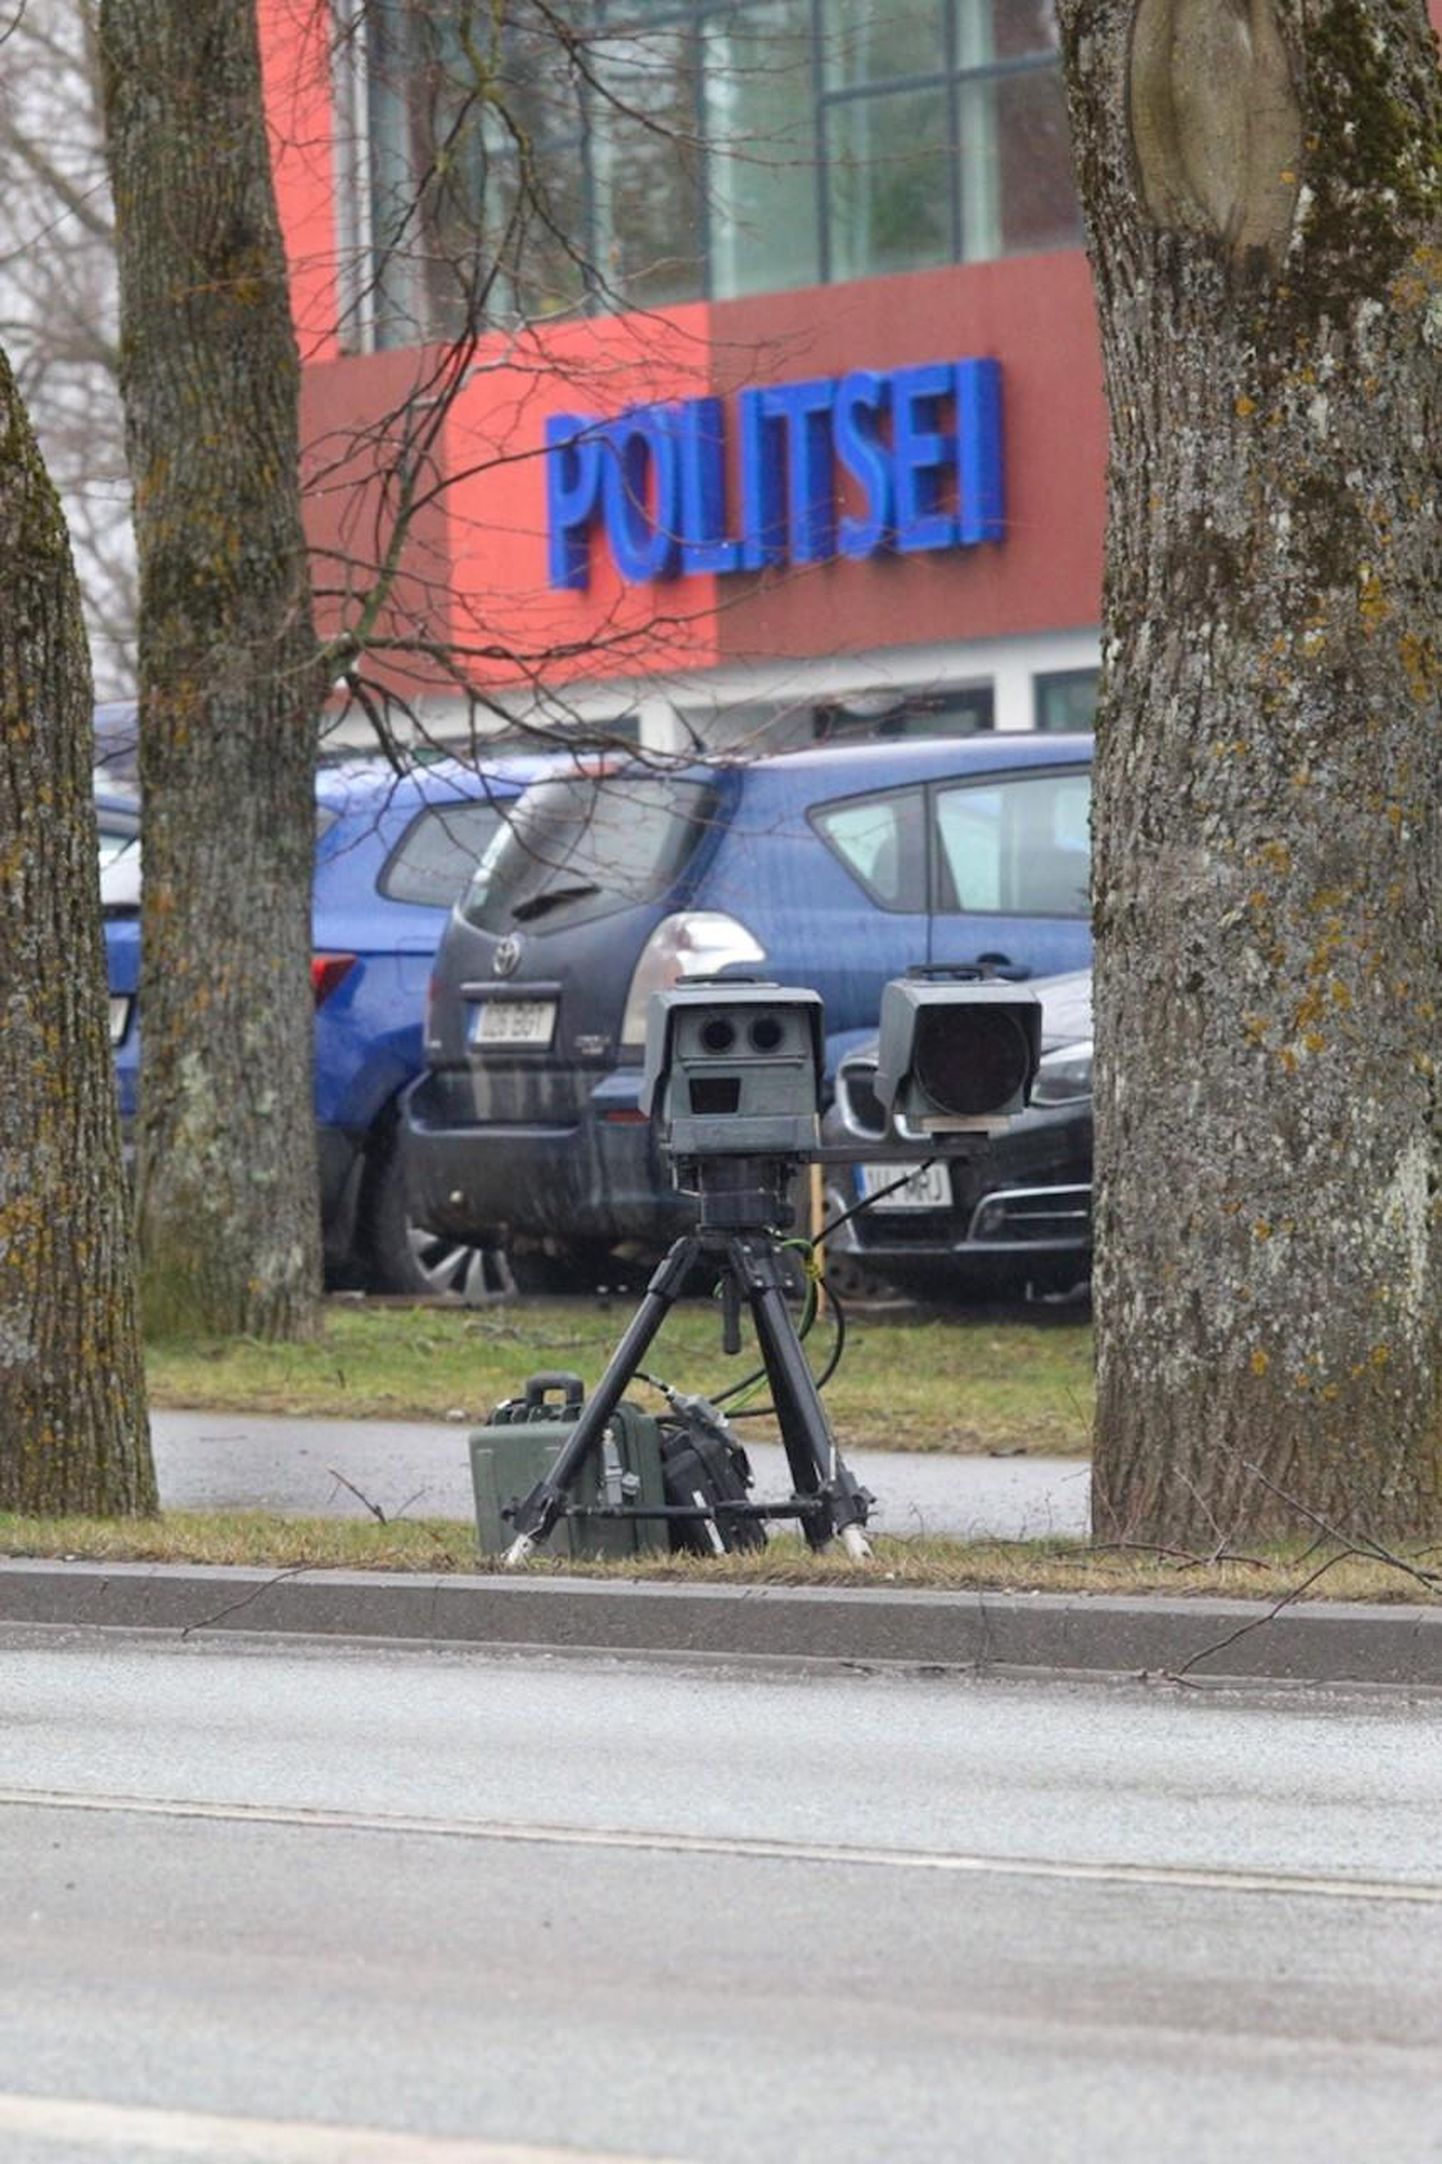 Politsei mobiilne kiiruskaamera mõõtis eile sõidukite kiirust Rakvere politseijaoskonna ees.